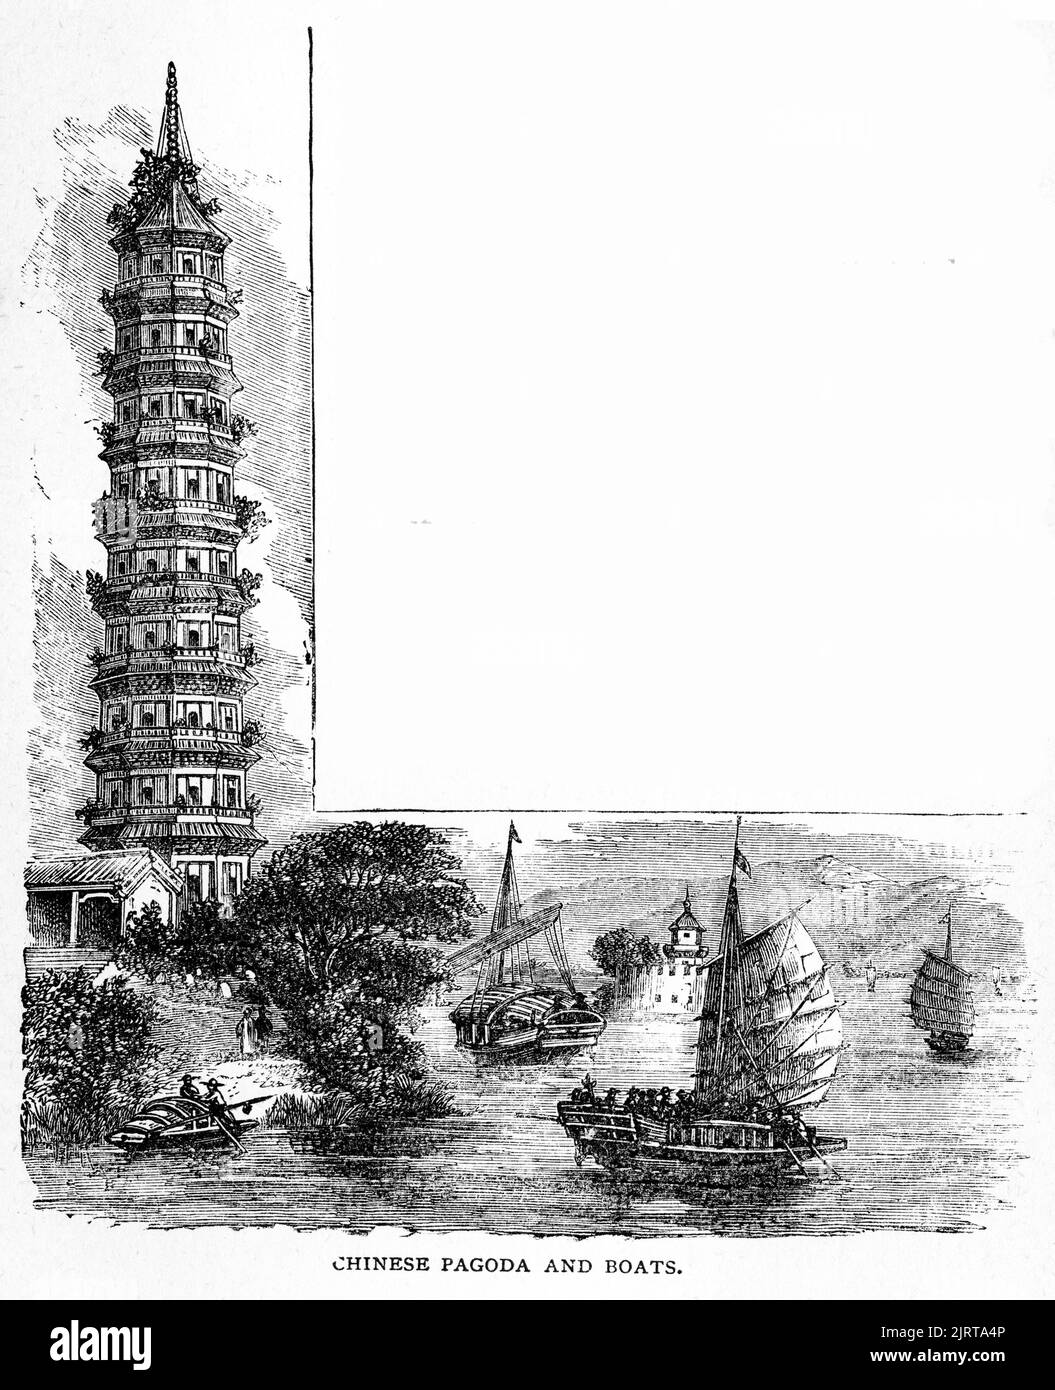 Gravure de pagode et de bateaux chinois, d'Un voyage dans le Sunbeam par la baronne Anna 'Annie' Brassey (1839 – 1887), publié en 1878 Banque D'Images